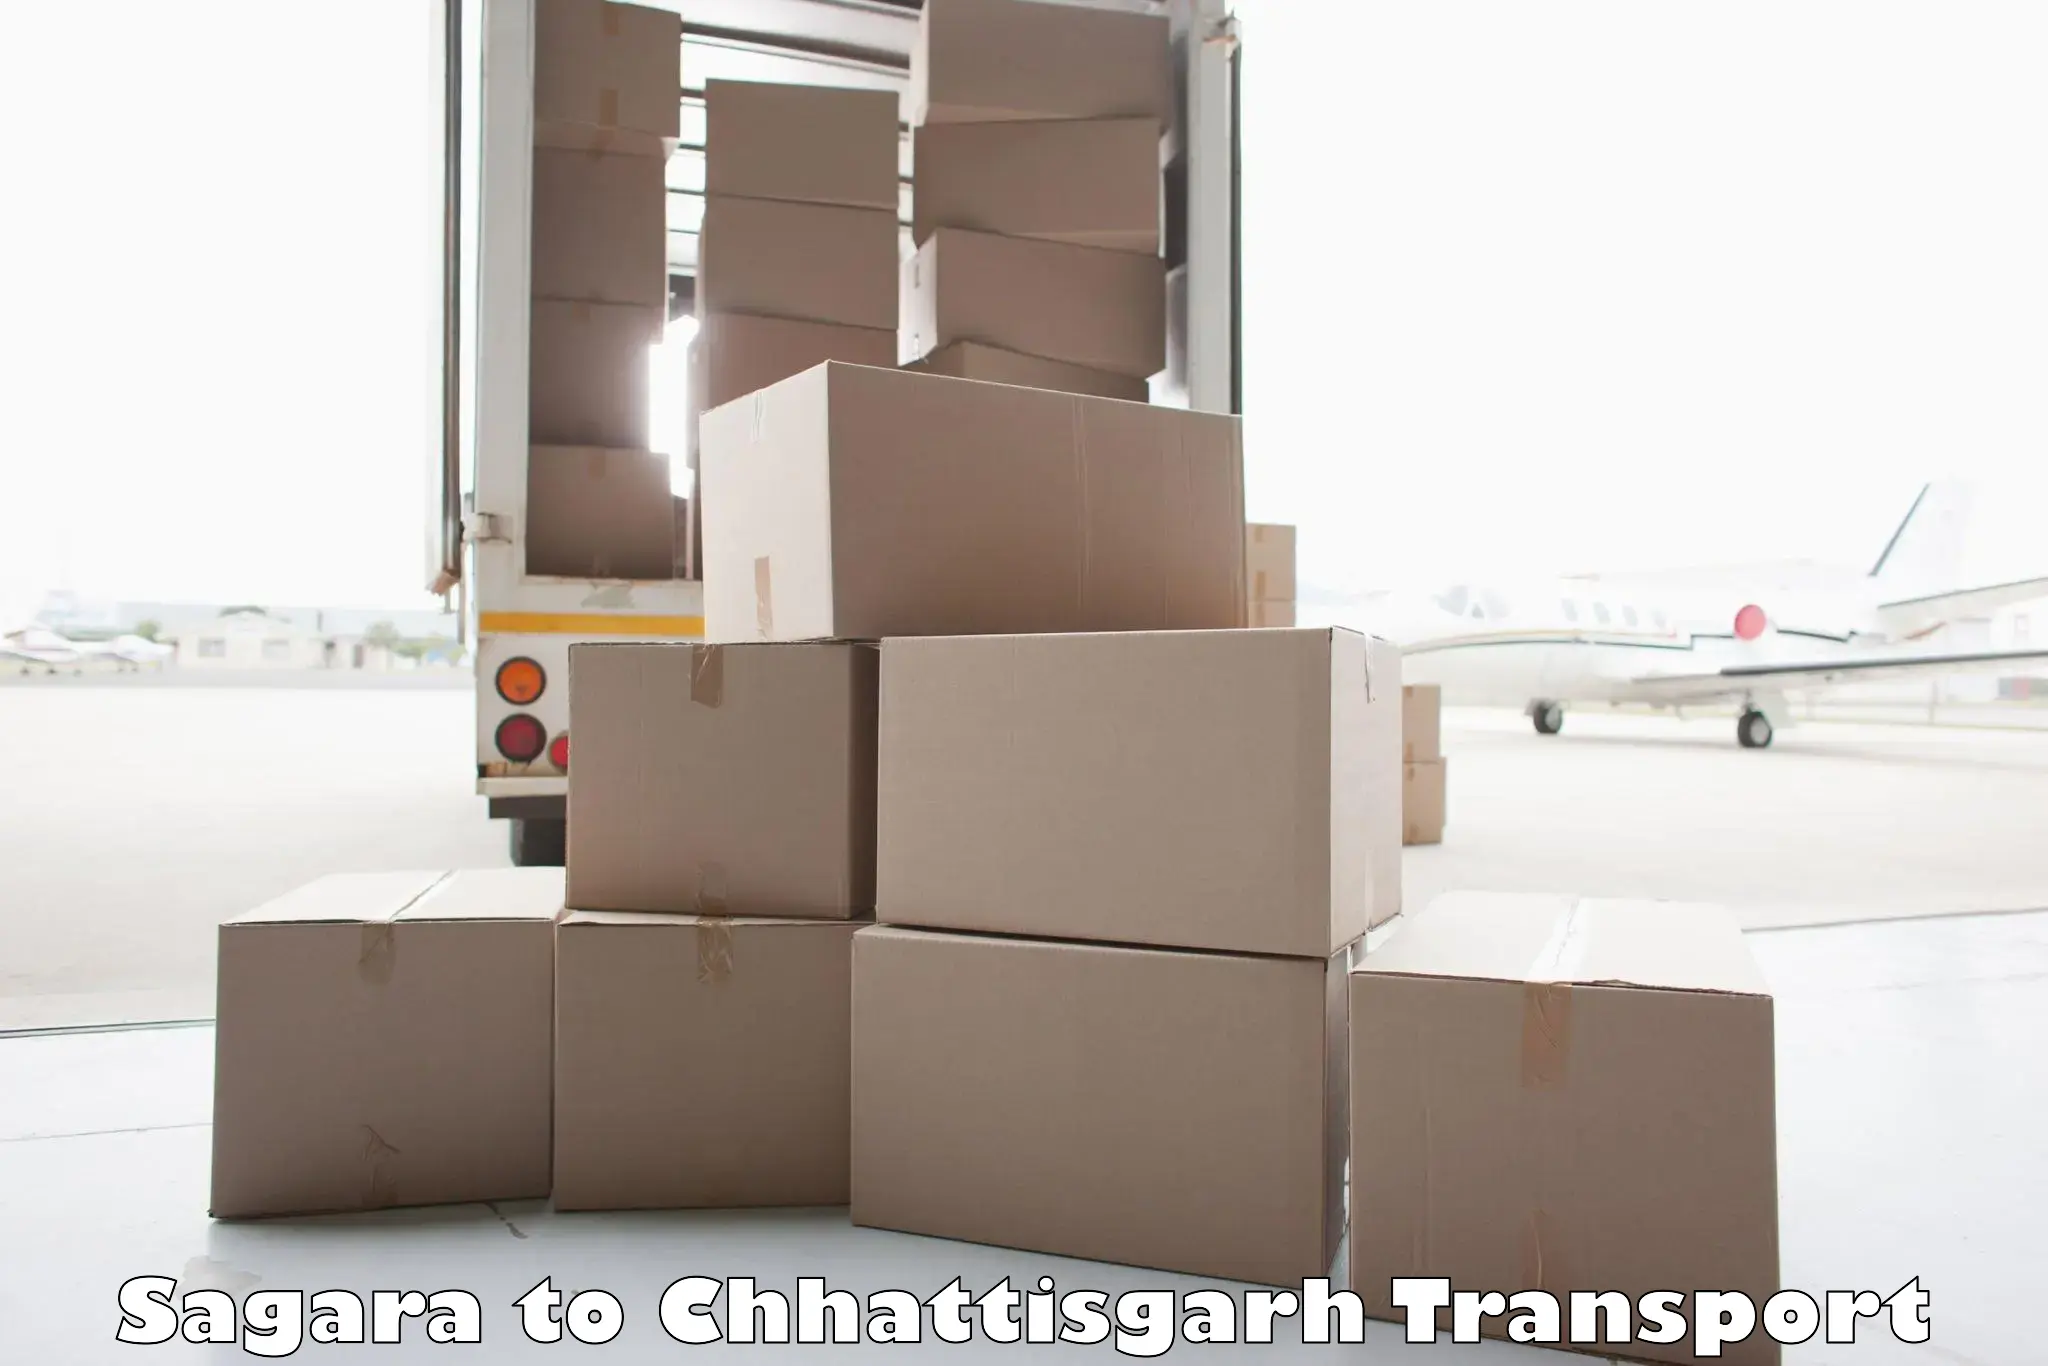 Air freight transport services Sagara to Raigarh Chhattisgarh